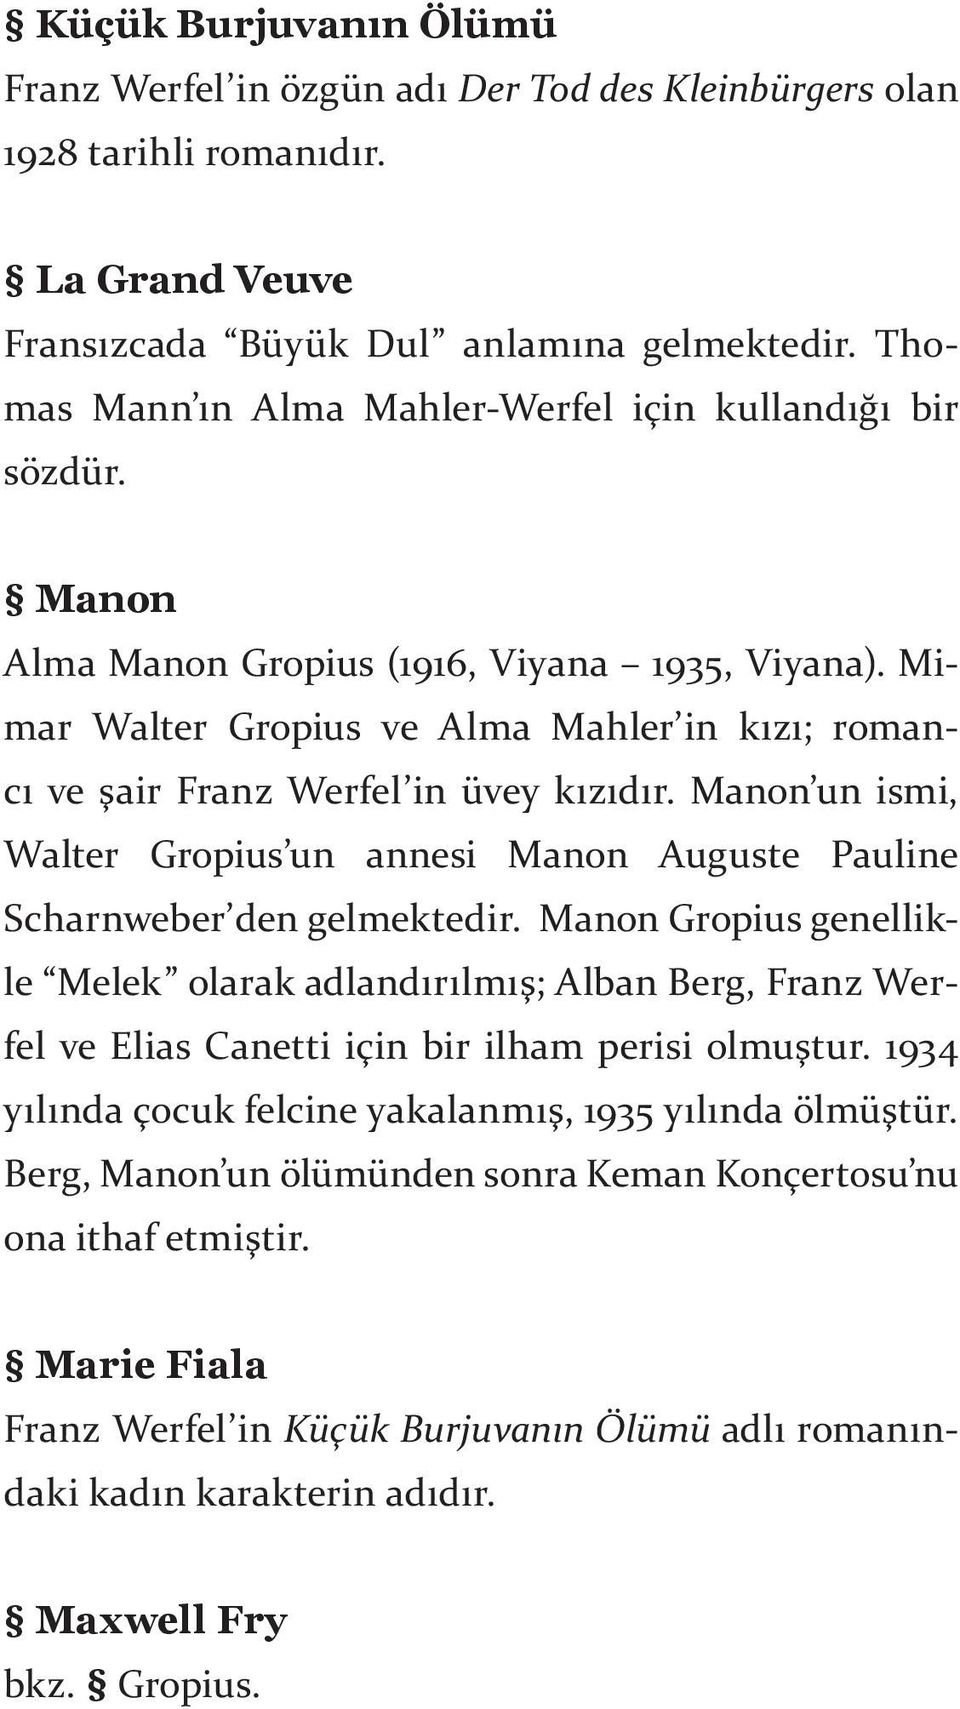 Mimar Walter Gropius ve Alma Mahler in kızı; romancı ve şair Franz Werfel in üvey kızıdır. Manon un ismi, Walter Gropius un annesi Manon Auguste Pauline Scharnweber den gelmektedir.